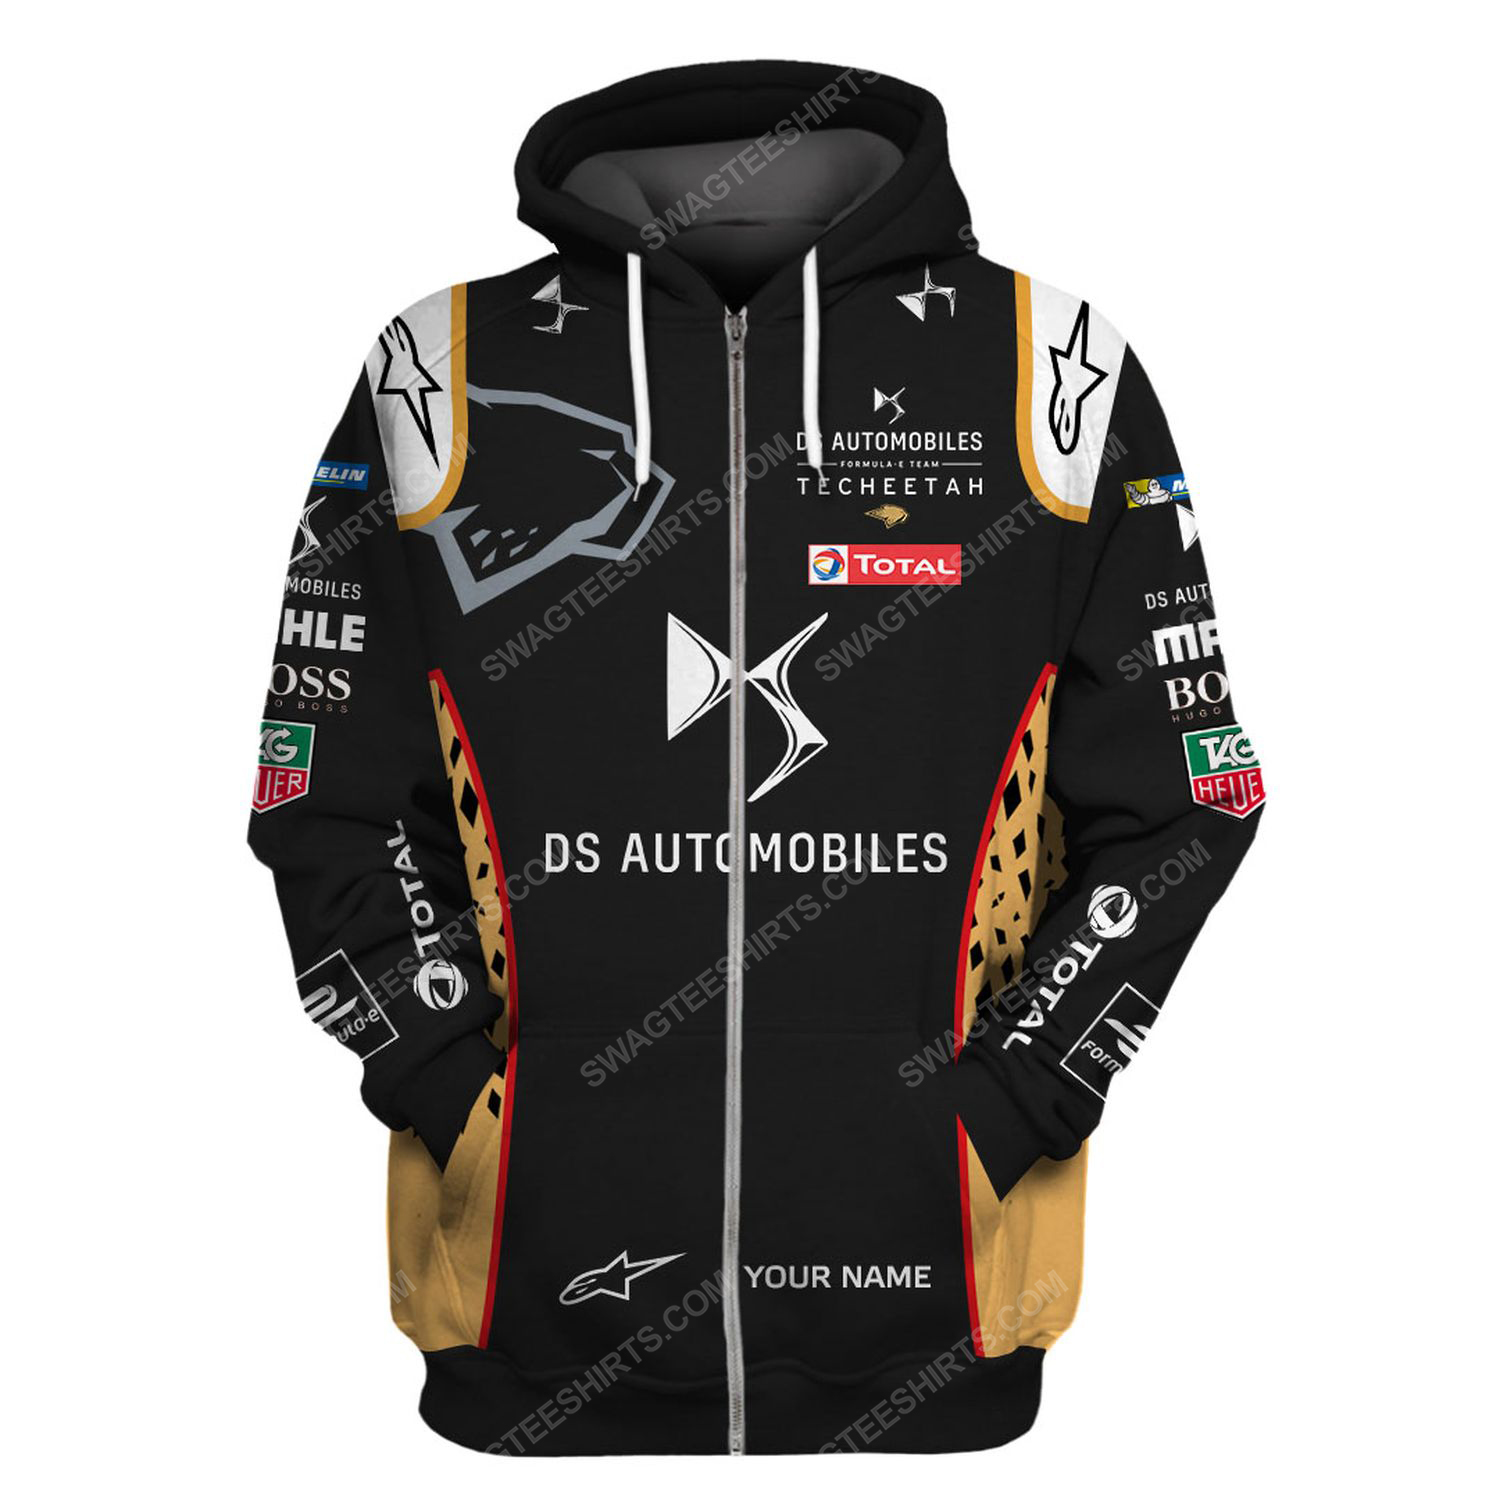 Custom ds automobiles racing team motorsport full printing zip hoodie